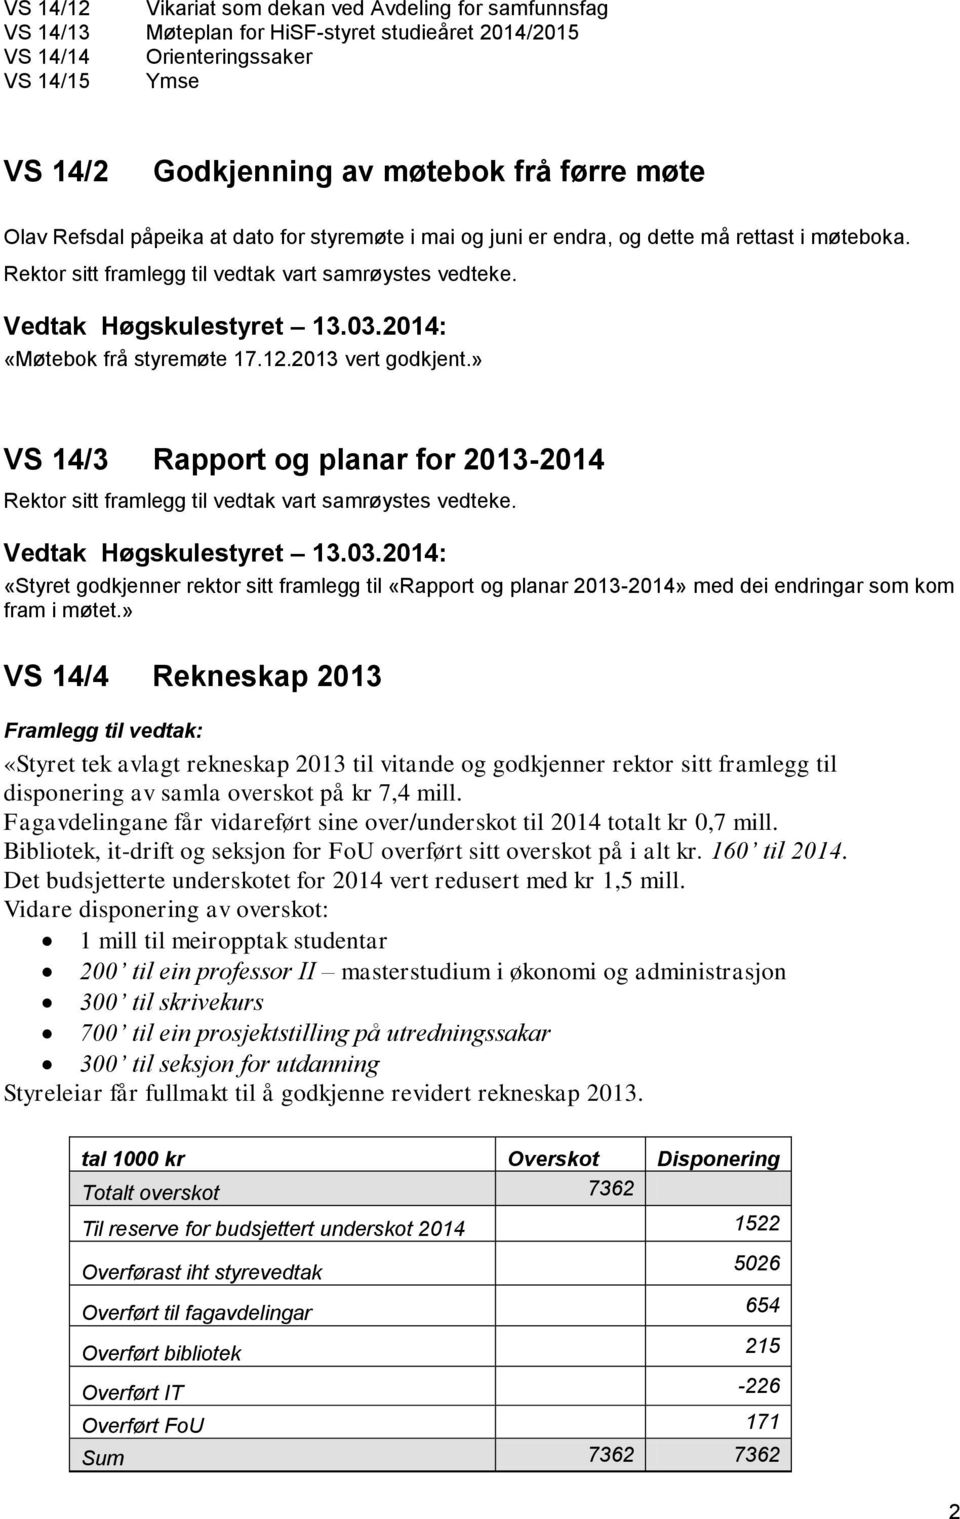 » VS 14/3 Rapport og planar for 2013-2014 Vedtak Høgskulestyret 13.03.2014: «Styret godkjenner rektor sitt framlegg til «Rapport og planar 2013-2014» med dei endringar som kom fram i møtet.